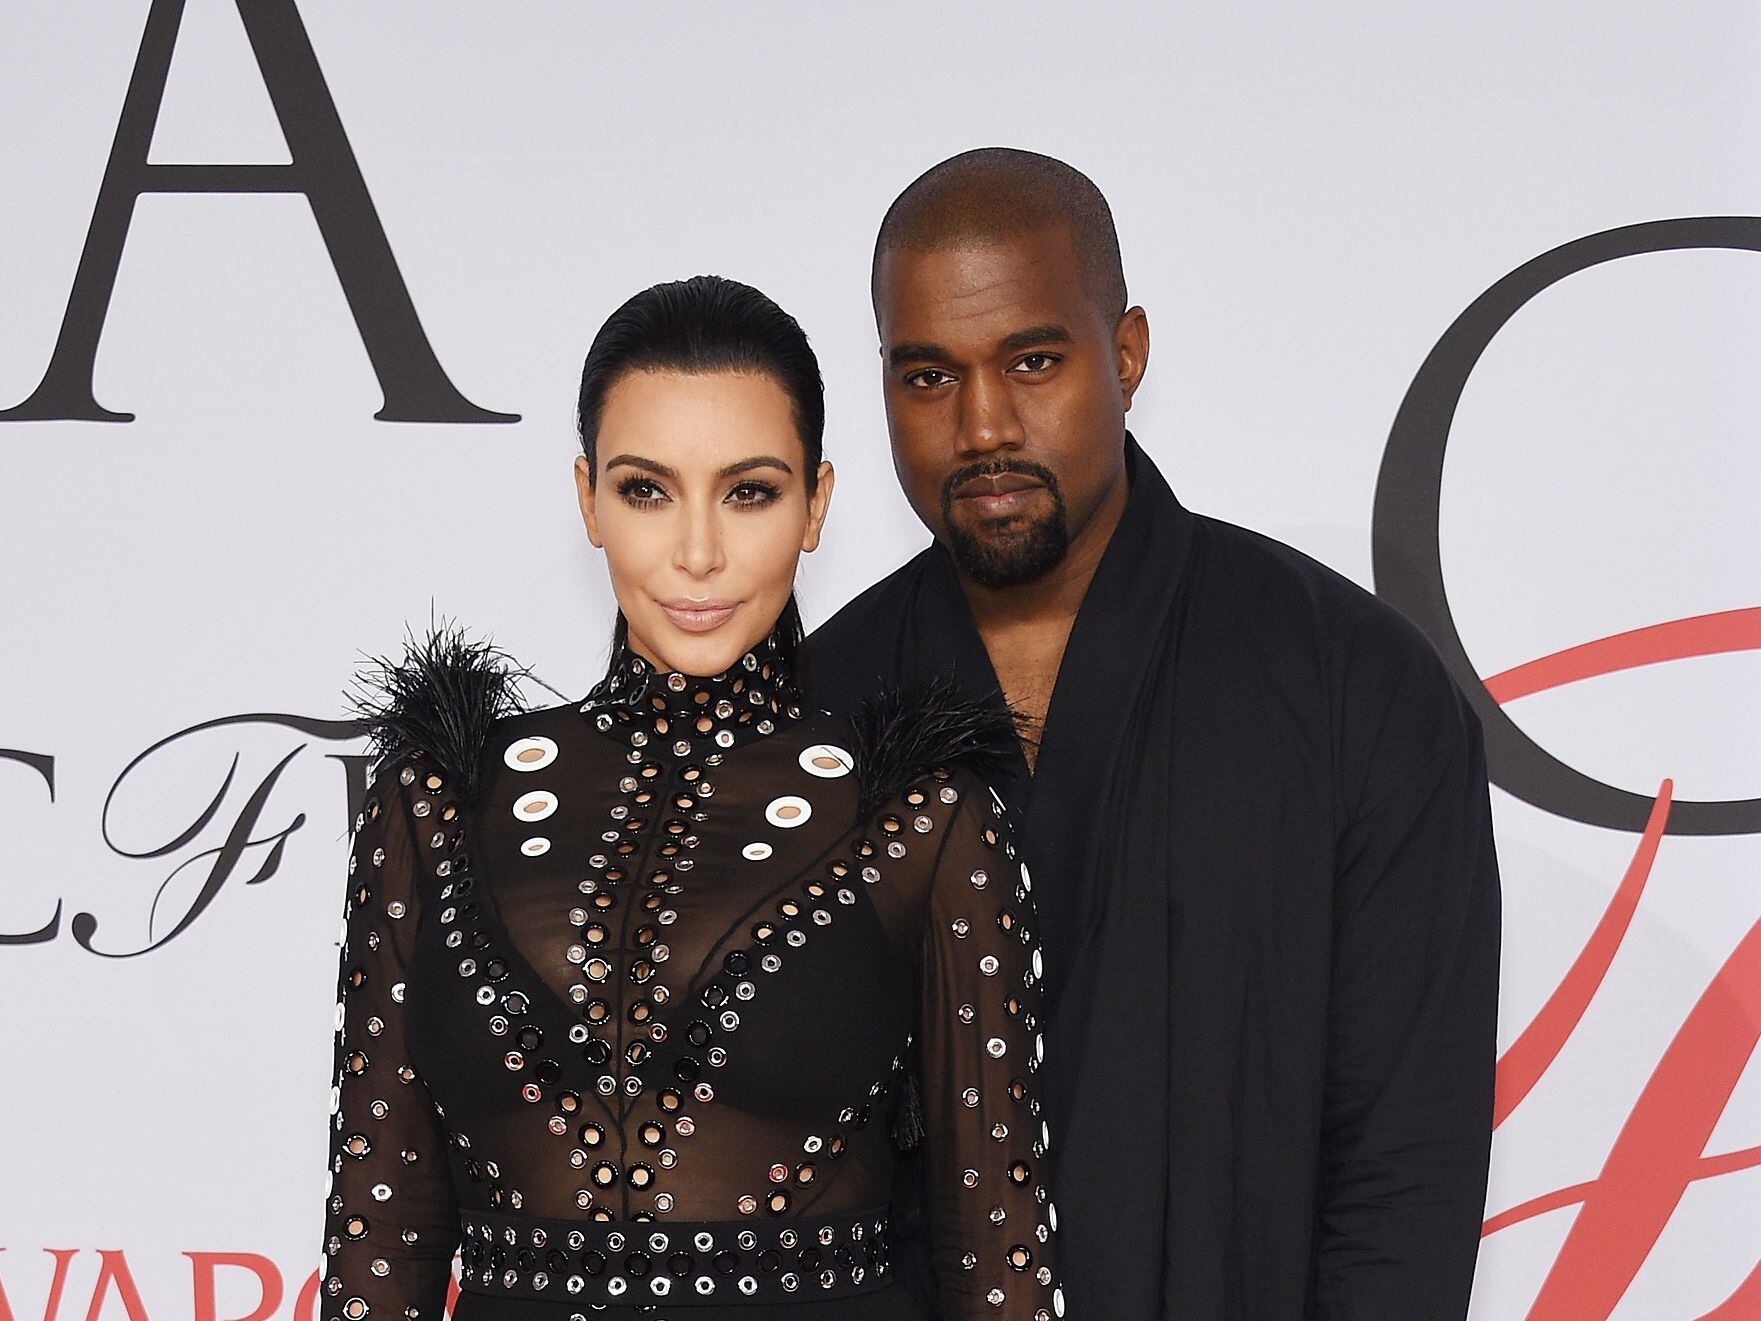 La revista 'Rolling Stone' había dado a conocer que cuando Kanye West trabajaba con Adidas, le mostraba a los empleados, fotos íntimas y sexuales de Kim Kardashian, su exesposa.